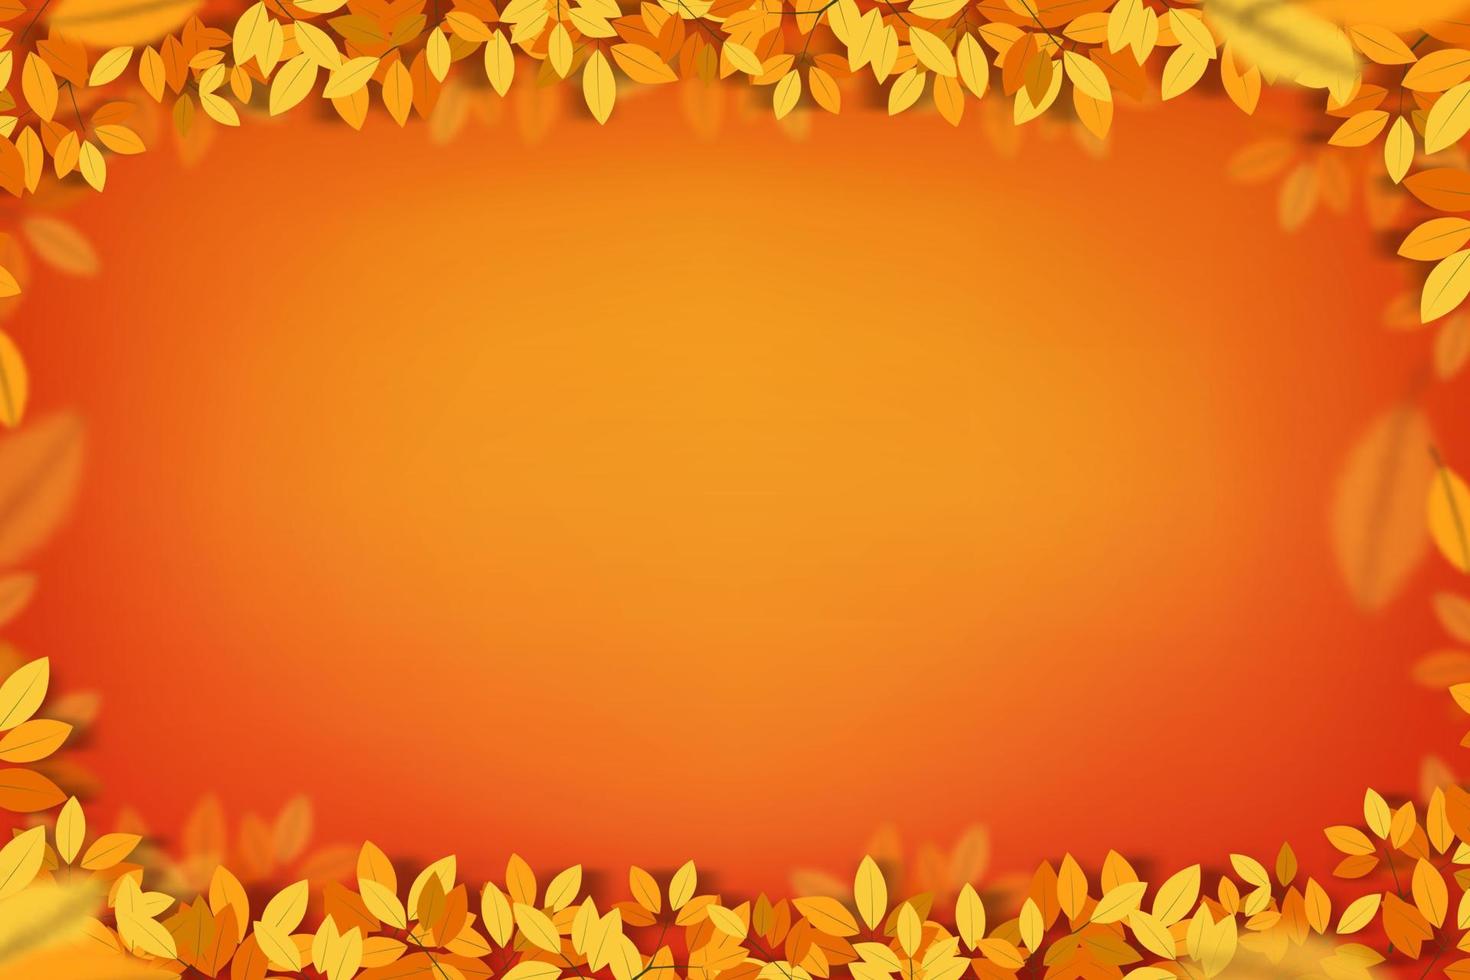 fondo de otoño, marco de hojas en naranja, fondo degradado amarillo, diseño de telón de fondo para la pancarta de venta de temporada de otoño, afiche, tarjeta de felicitación de acción de gracias, invitación al festival de la cosecha, estilo de arte de corte de papel vectorial vector